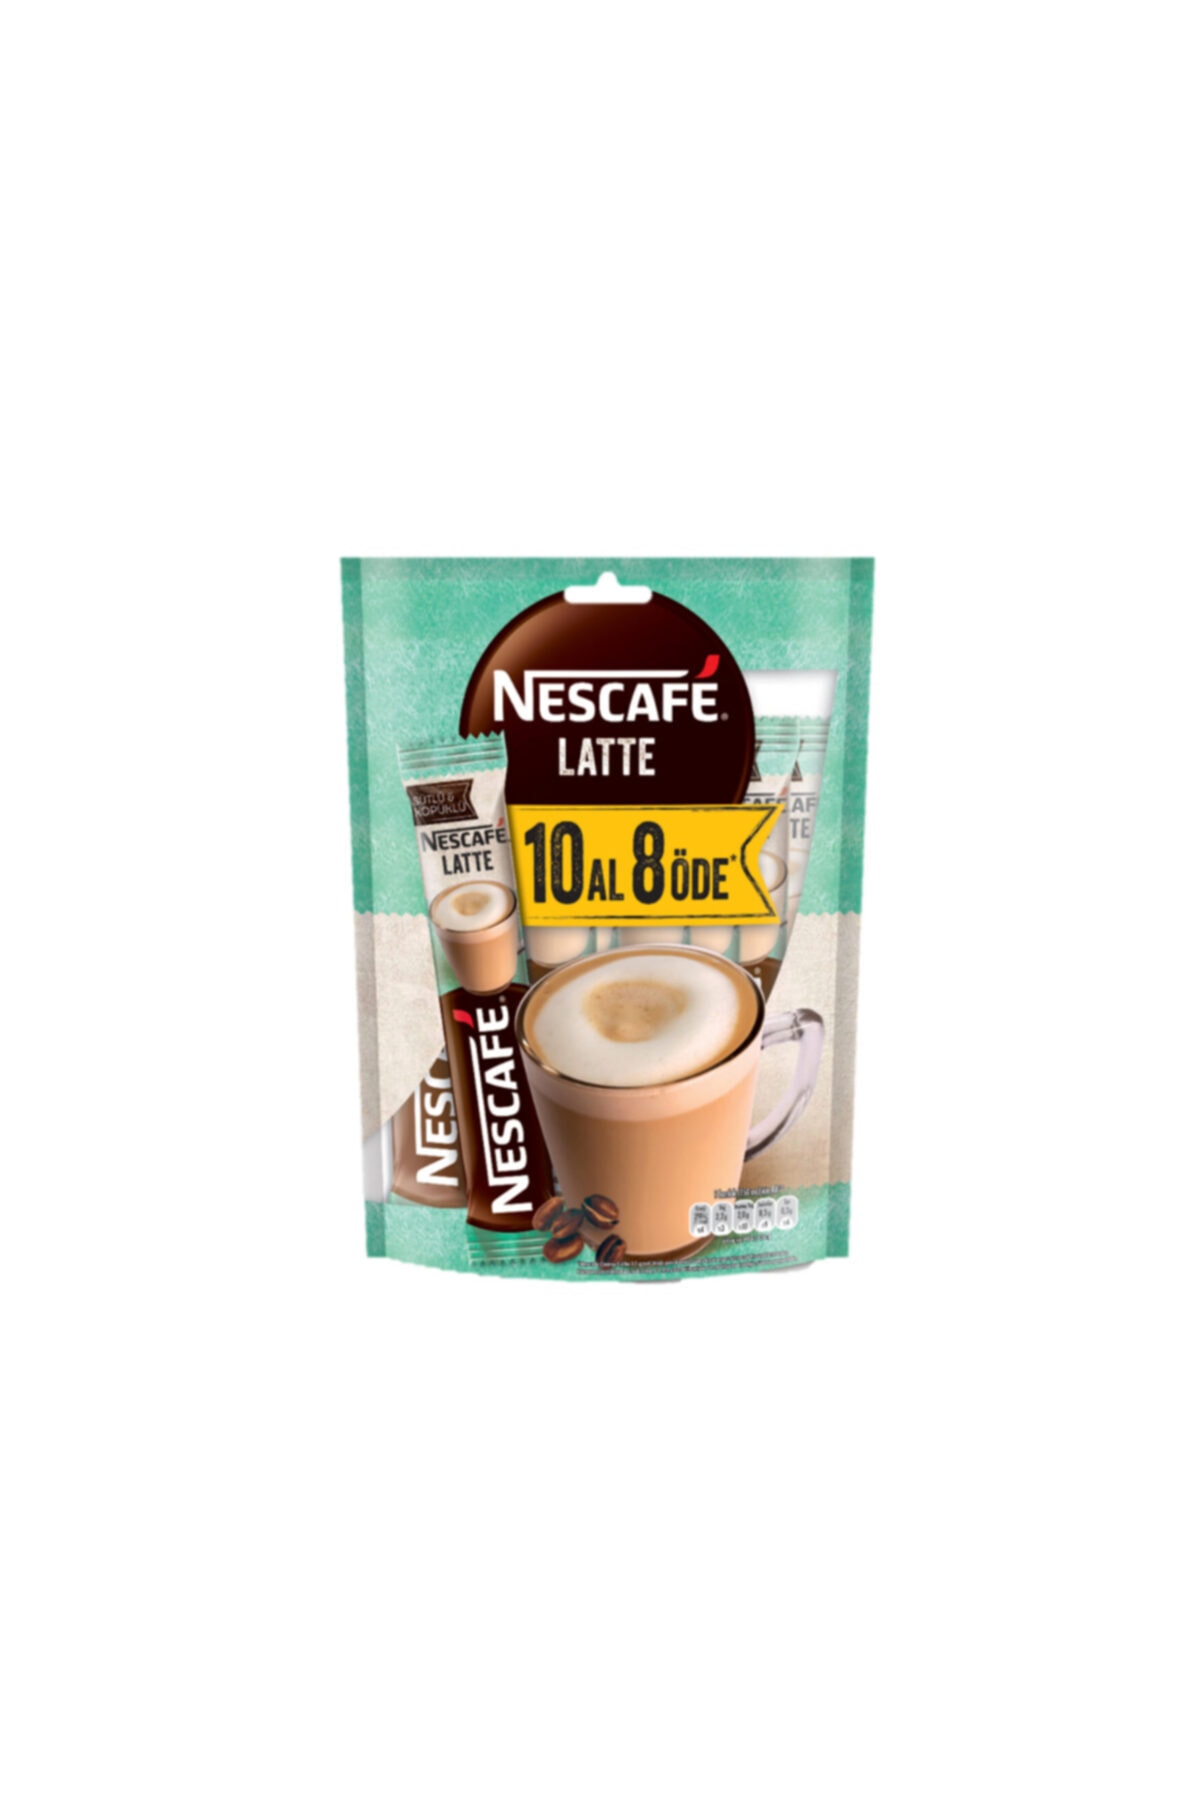 Nescafe Crema Latte 10 Al 8 Öde